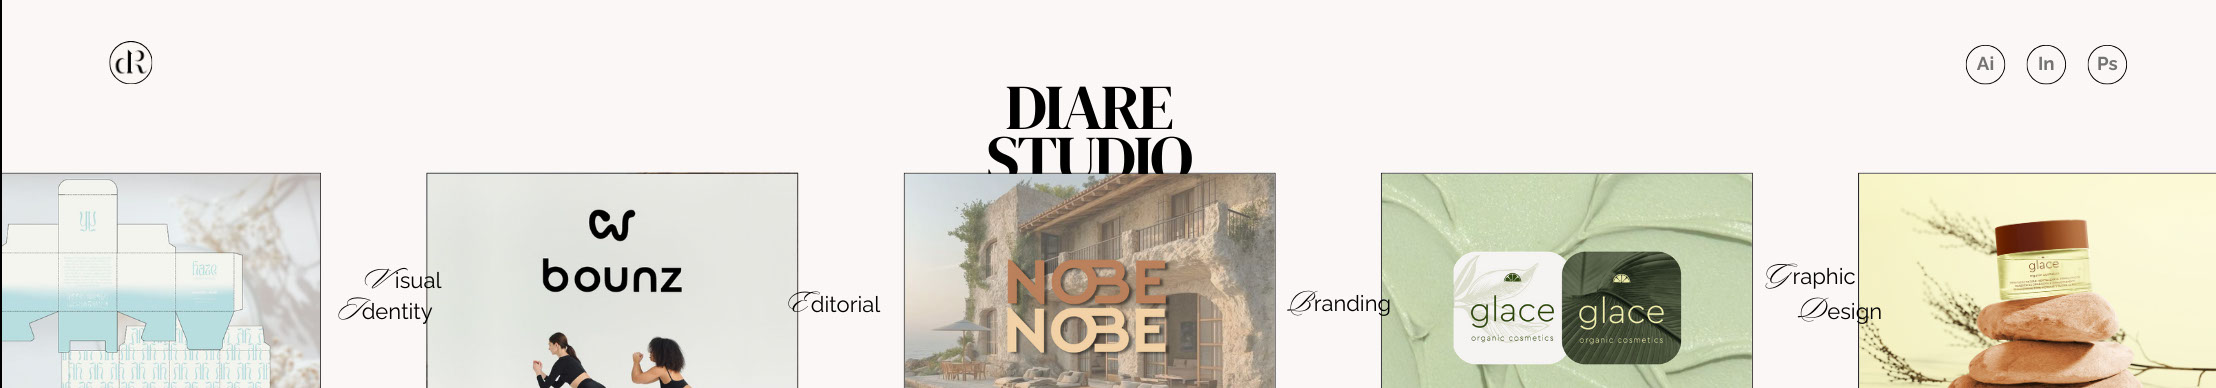 diare .studio's profile banner